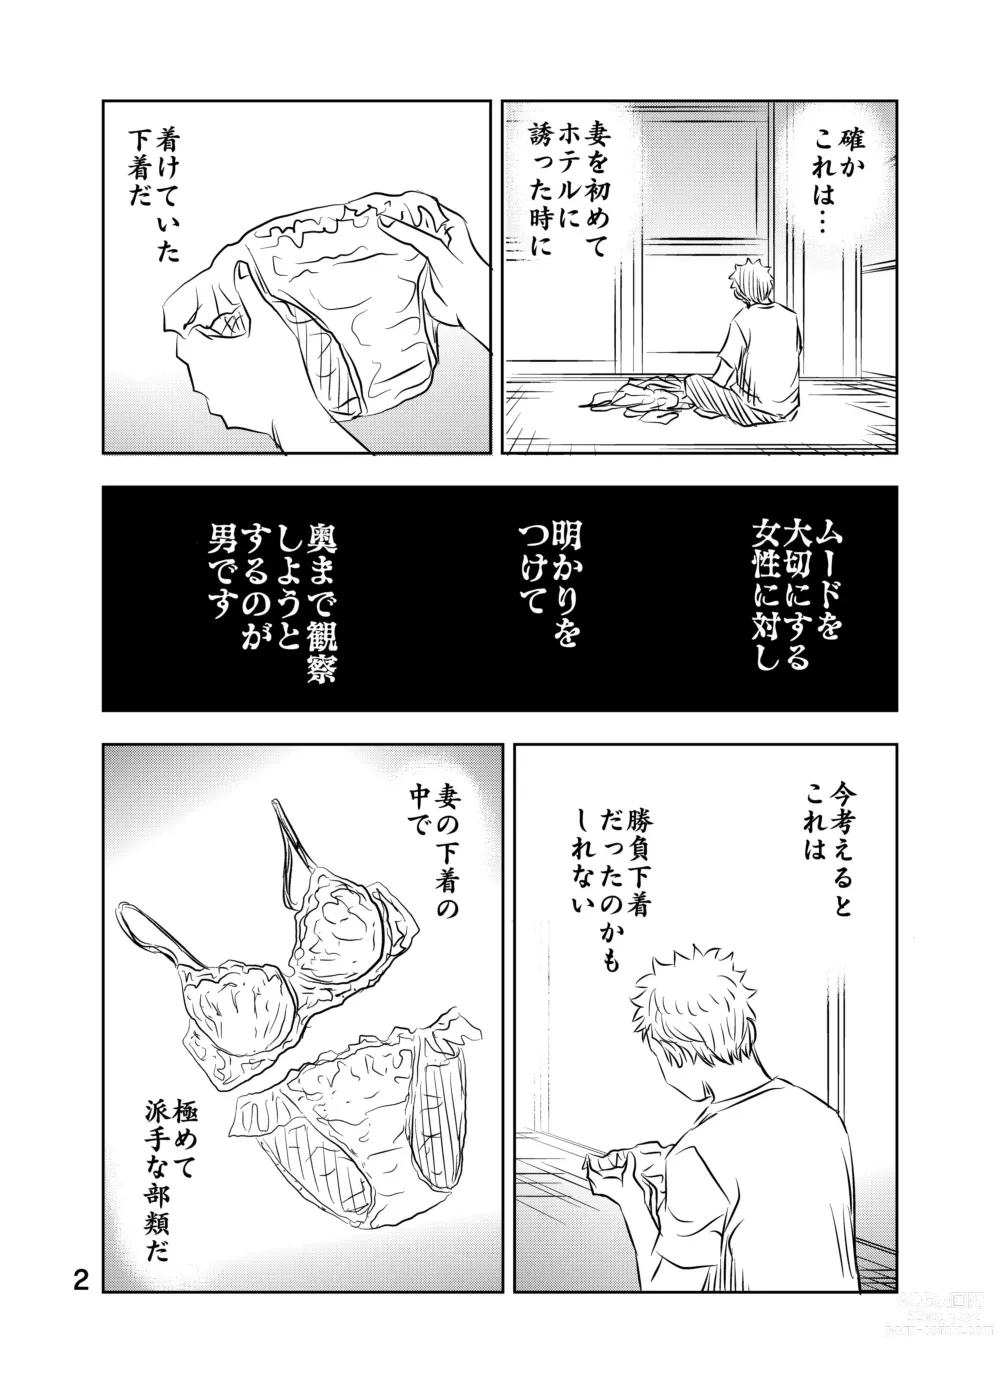 Page 16 of doujinshi Zurui Hito-tachi 2